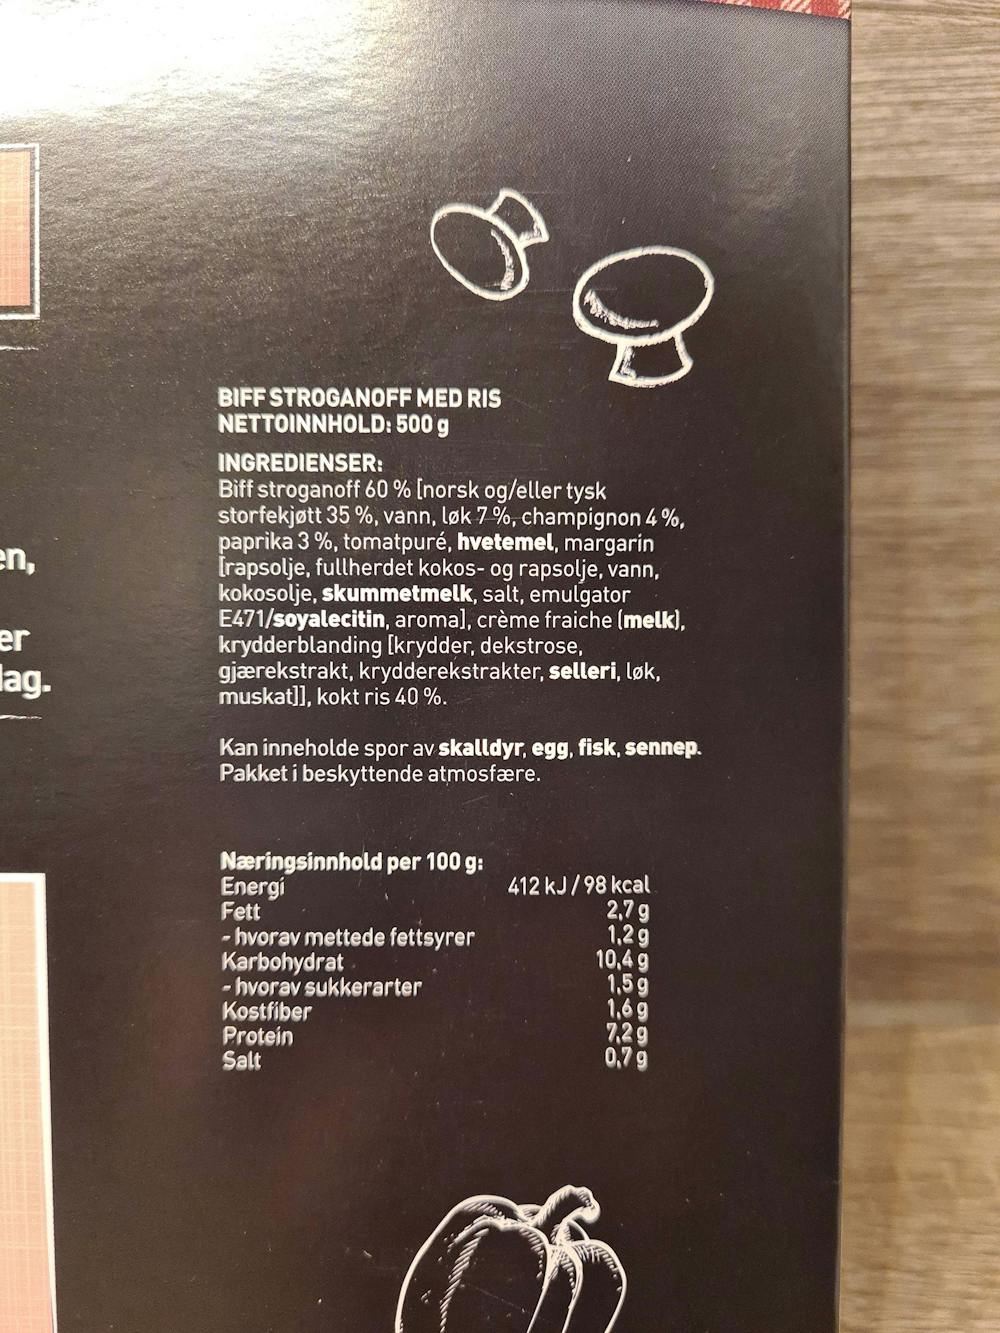 Ingredienslisten til Mors tradisjonelle, biff stroganoff, Fersk & ferdig